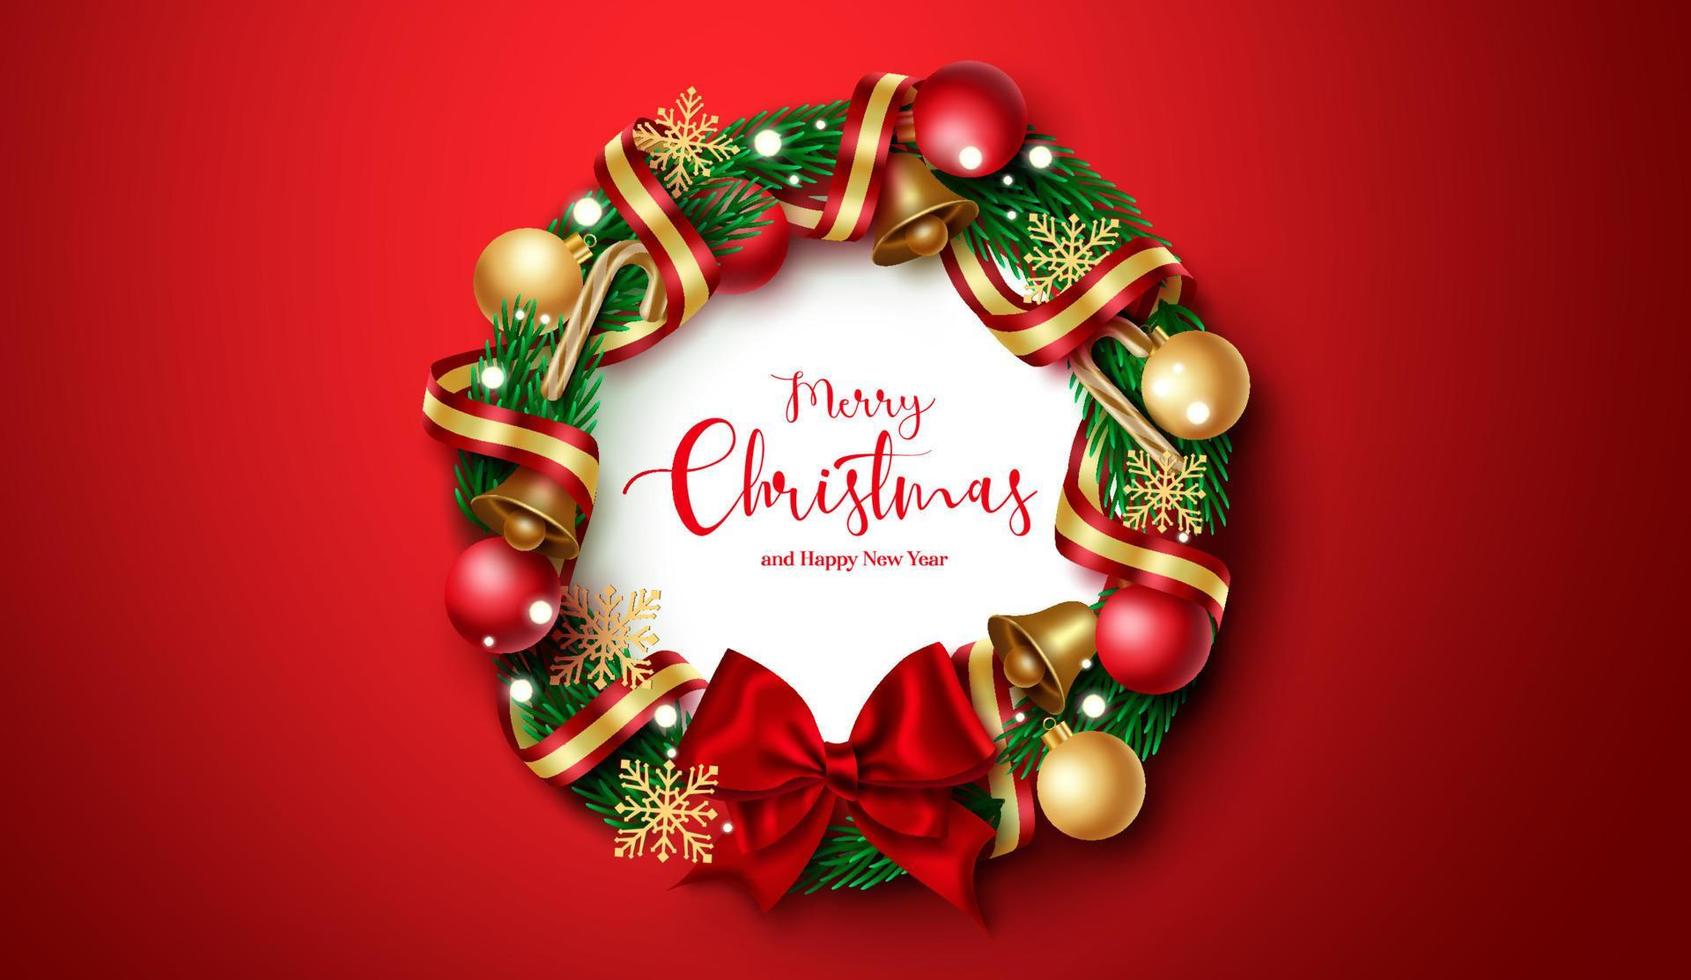 kerst krans vector ontwerp. prettige kerstdagen en gelukkig nieuwjaar groet tekst in krans fir takken element met kleurrijke bal, bel en lint xmas decoratie op rode achtergrond.